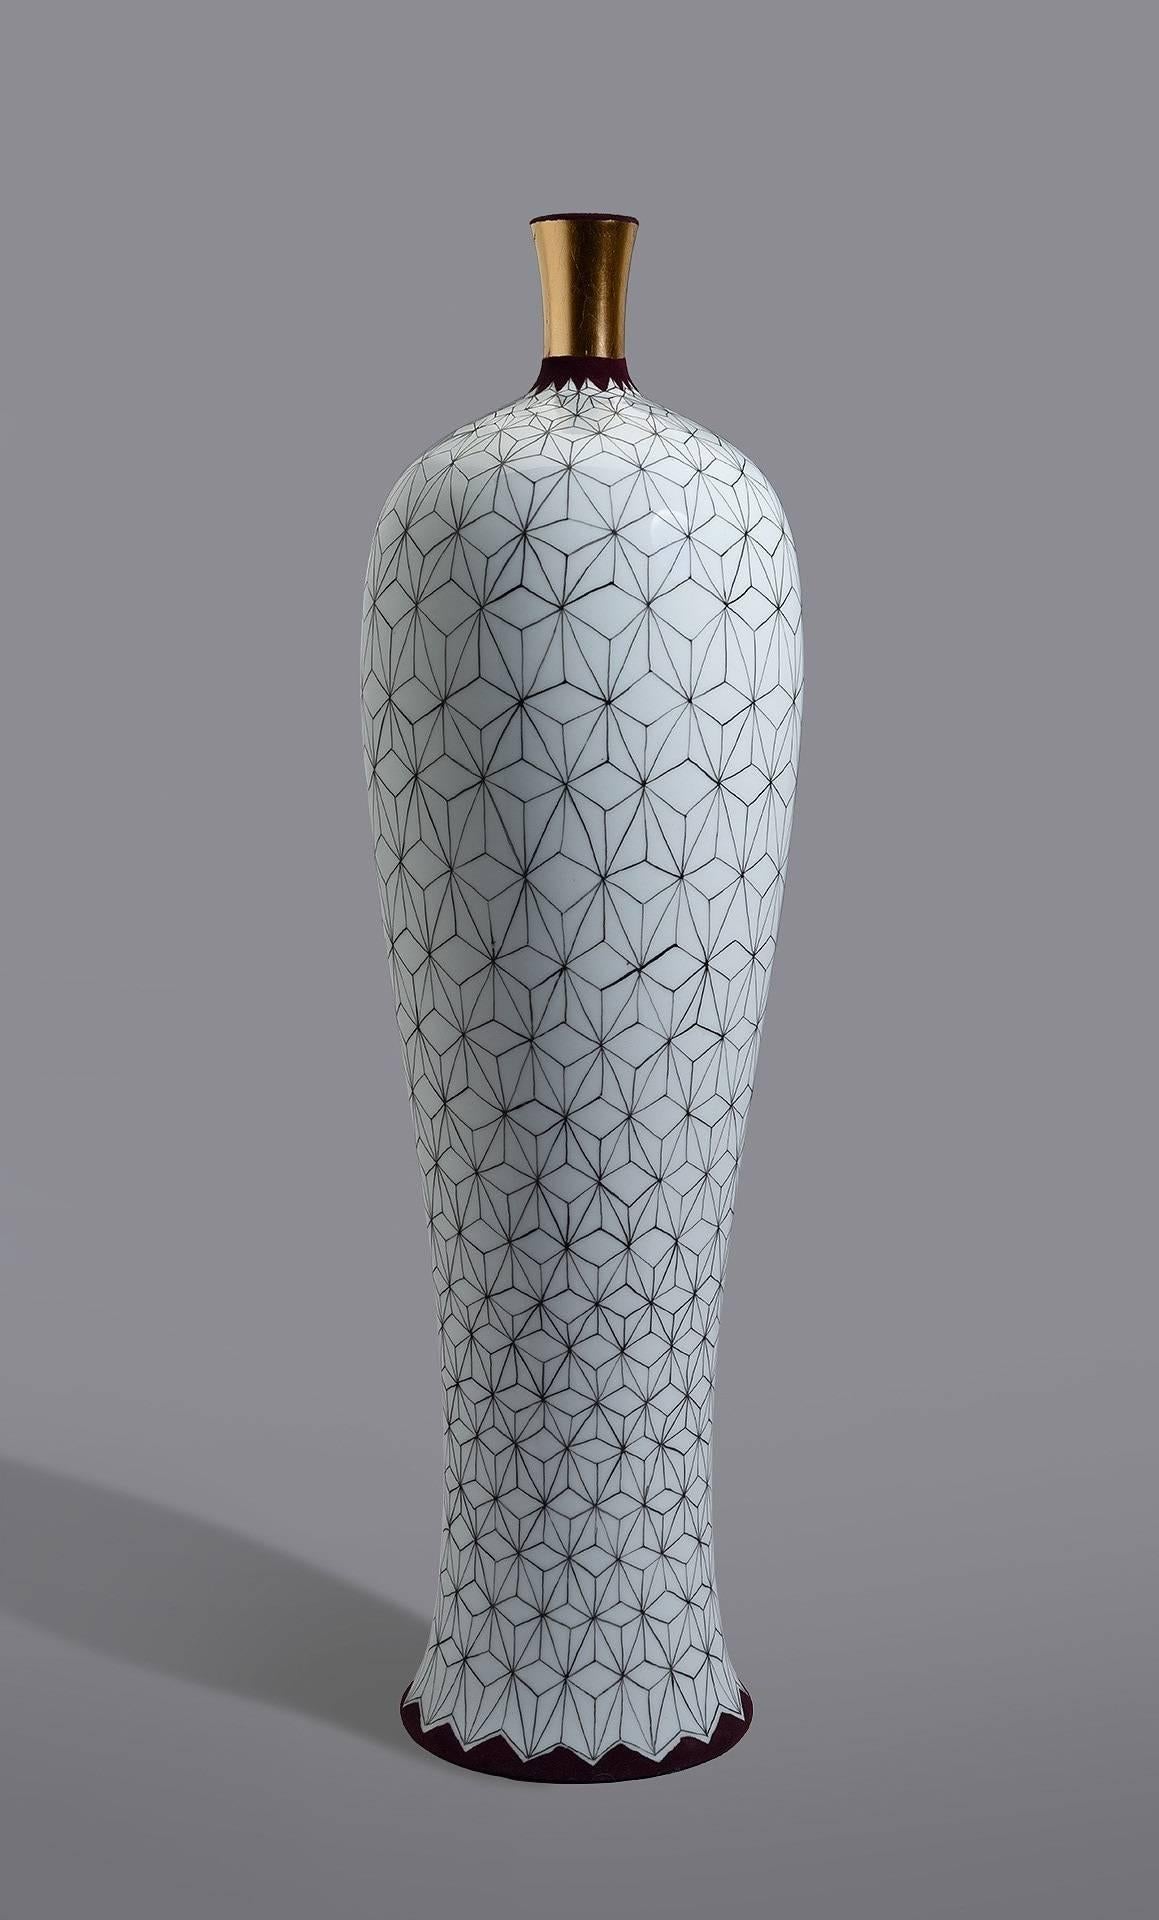 Vase "Stern" Pattern - Art by Melanie Sherman